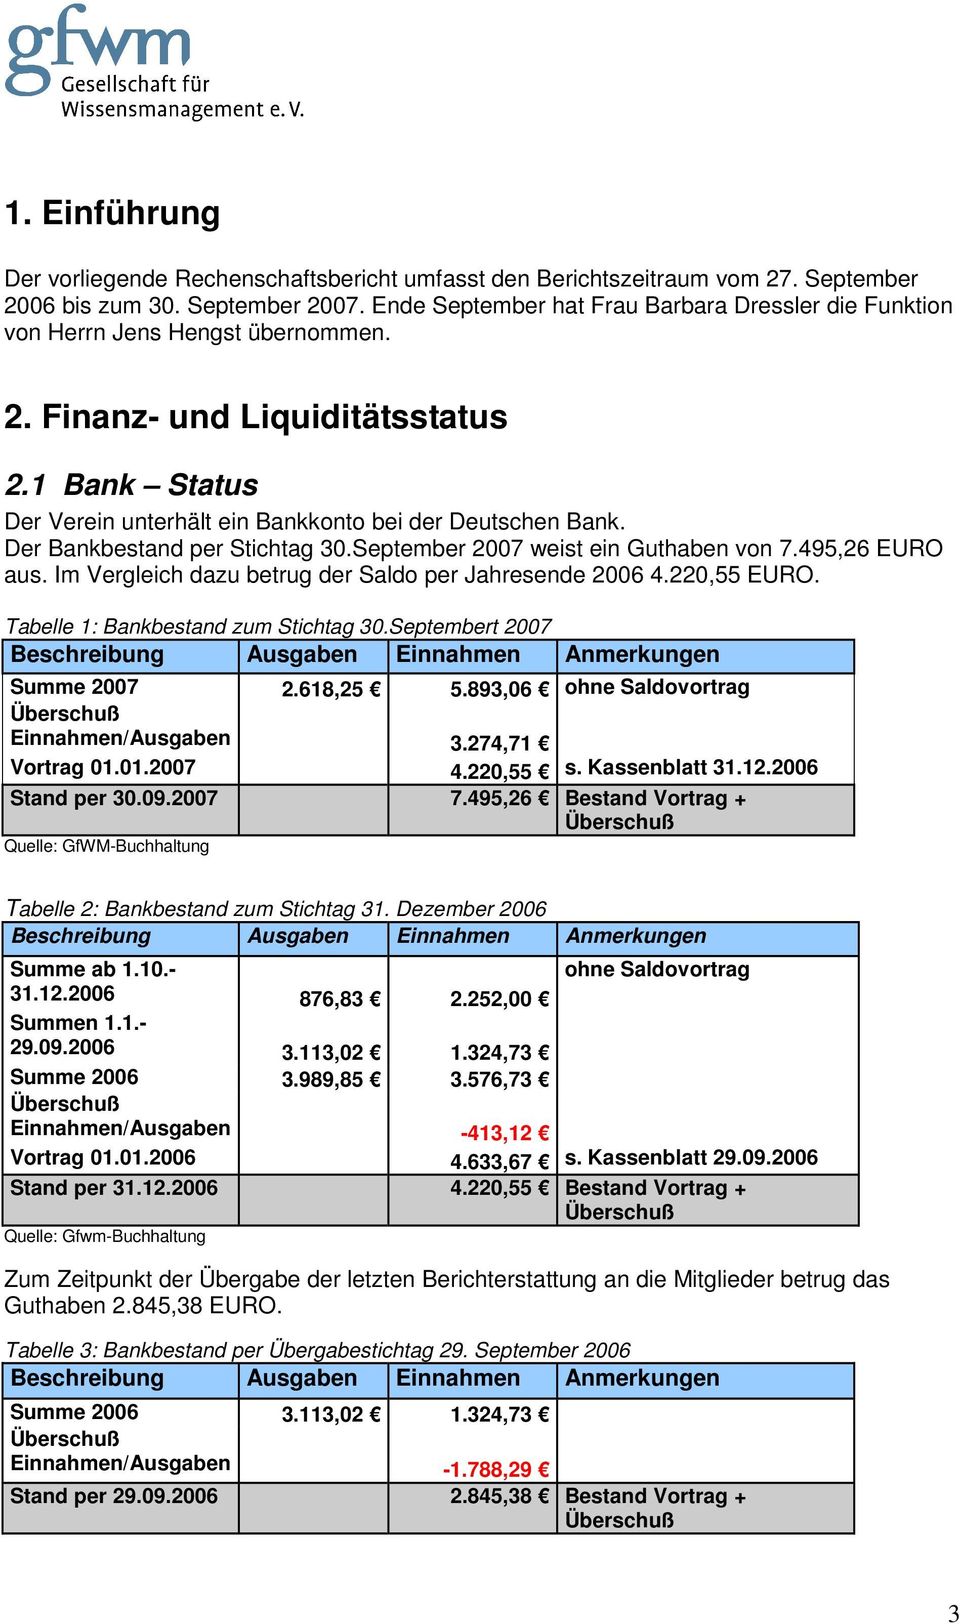 Der Bankbestand per Stichtag 30.September 2007 weist ein Guthaben von 7.495,26 EURO aus. Im Vergleich dazu betrug der Saldo per Jahresende 2006 4.220,55 EURO. Tabelle 1: Bankbestand zum Stichtag 30.